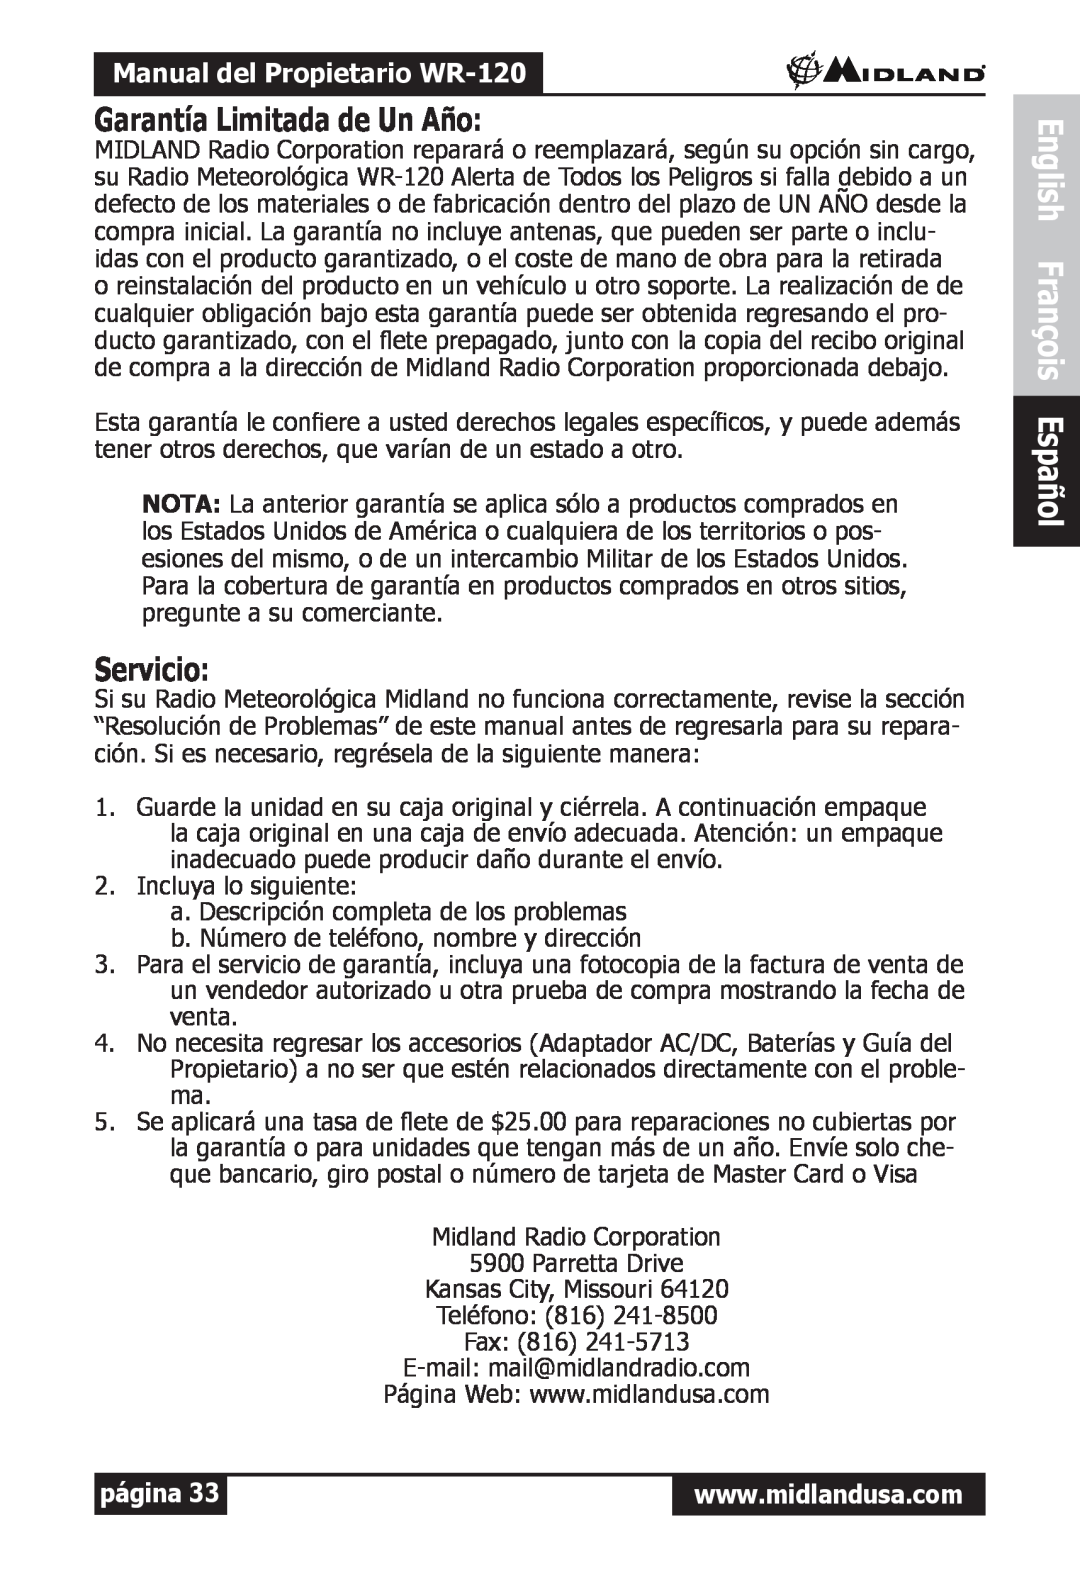 Midland Radio Garantía Limitada de Un Año, Servicio, English François Español, Manual del Propietario WR-120, página 